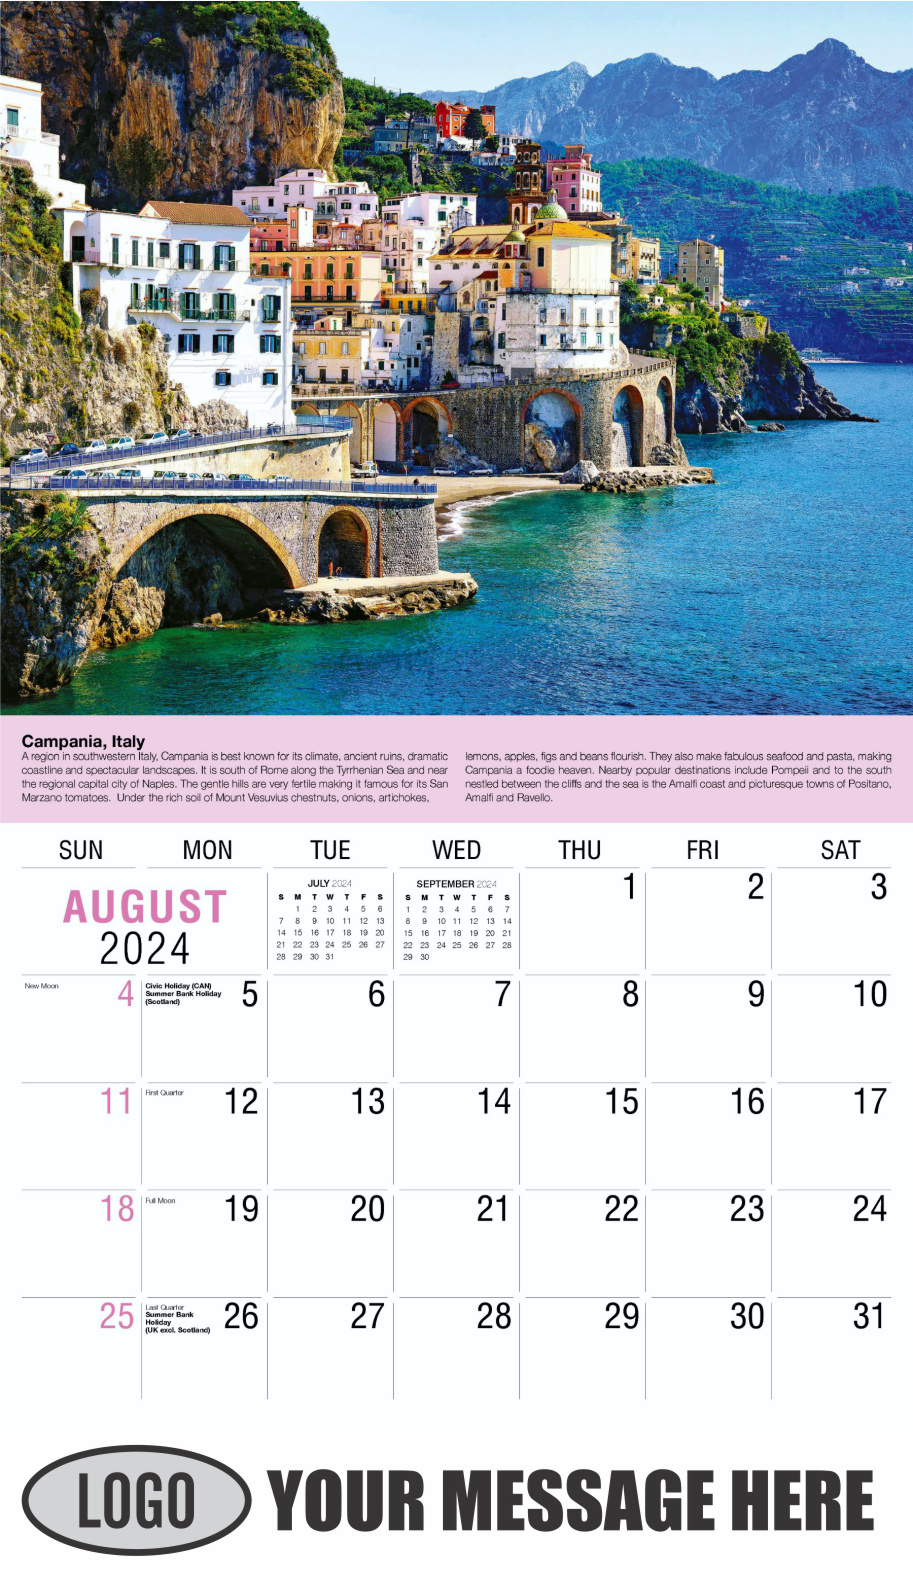 World Travel 2024 Business Advertising Wall Calendar - August